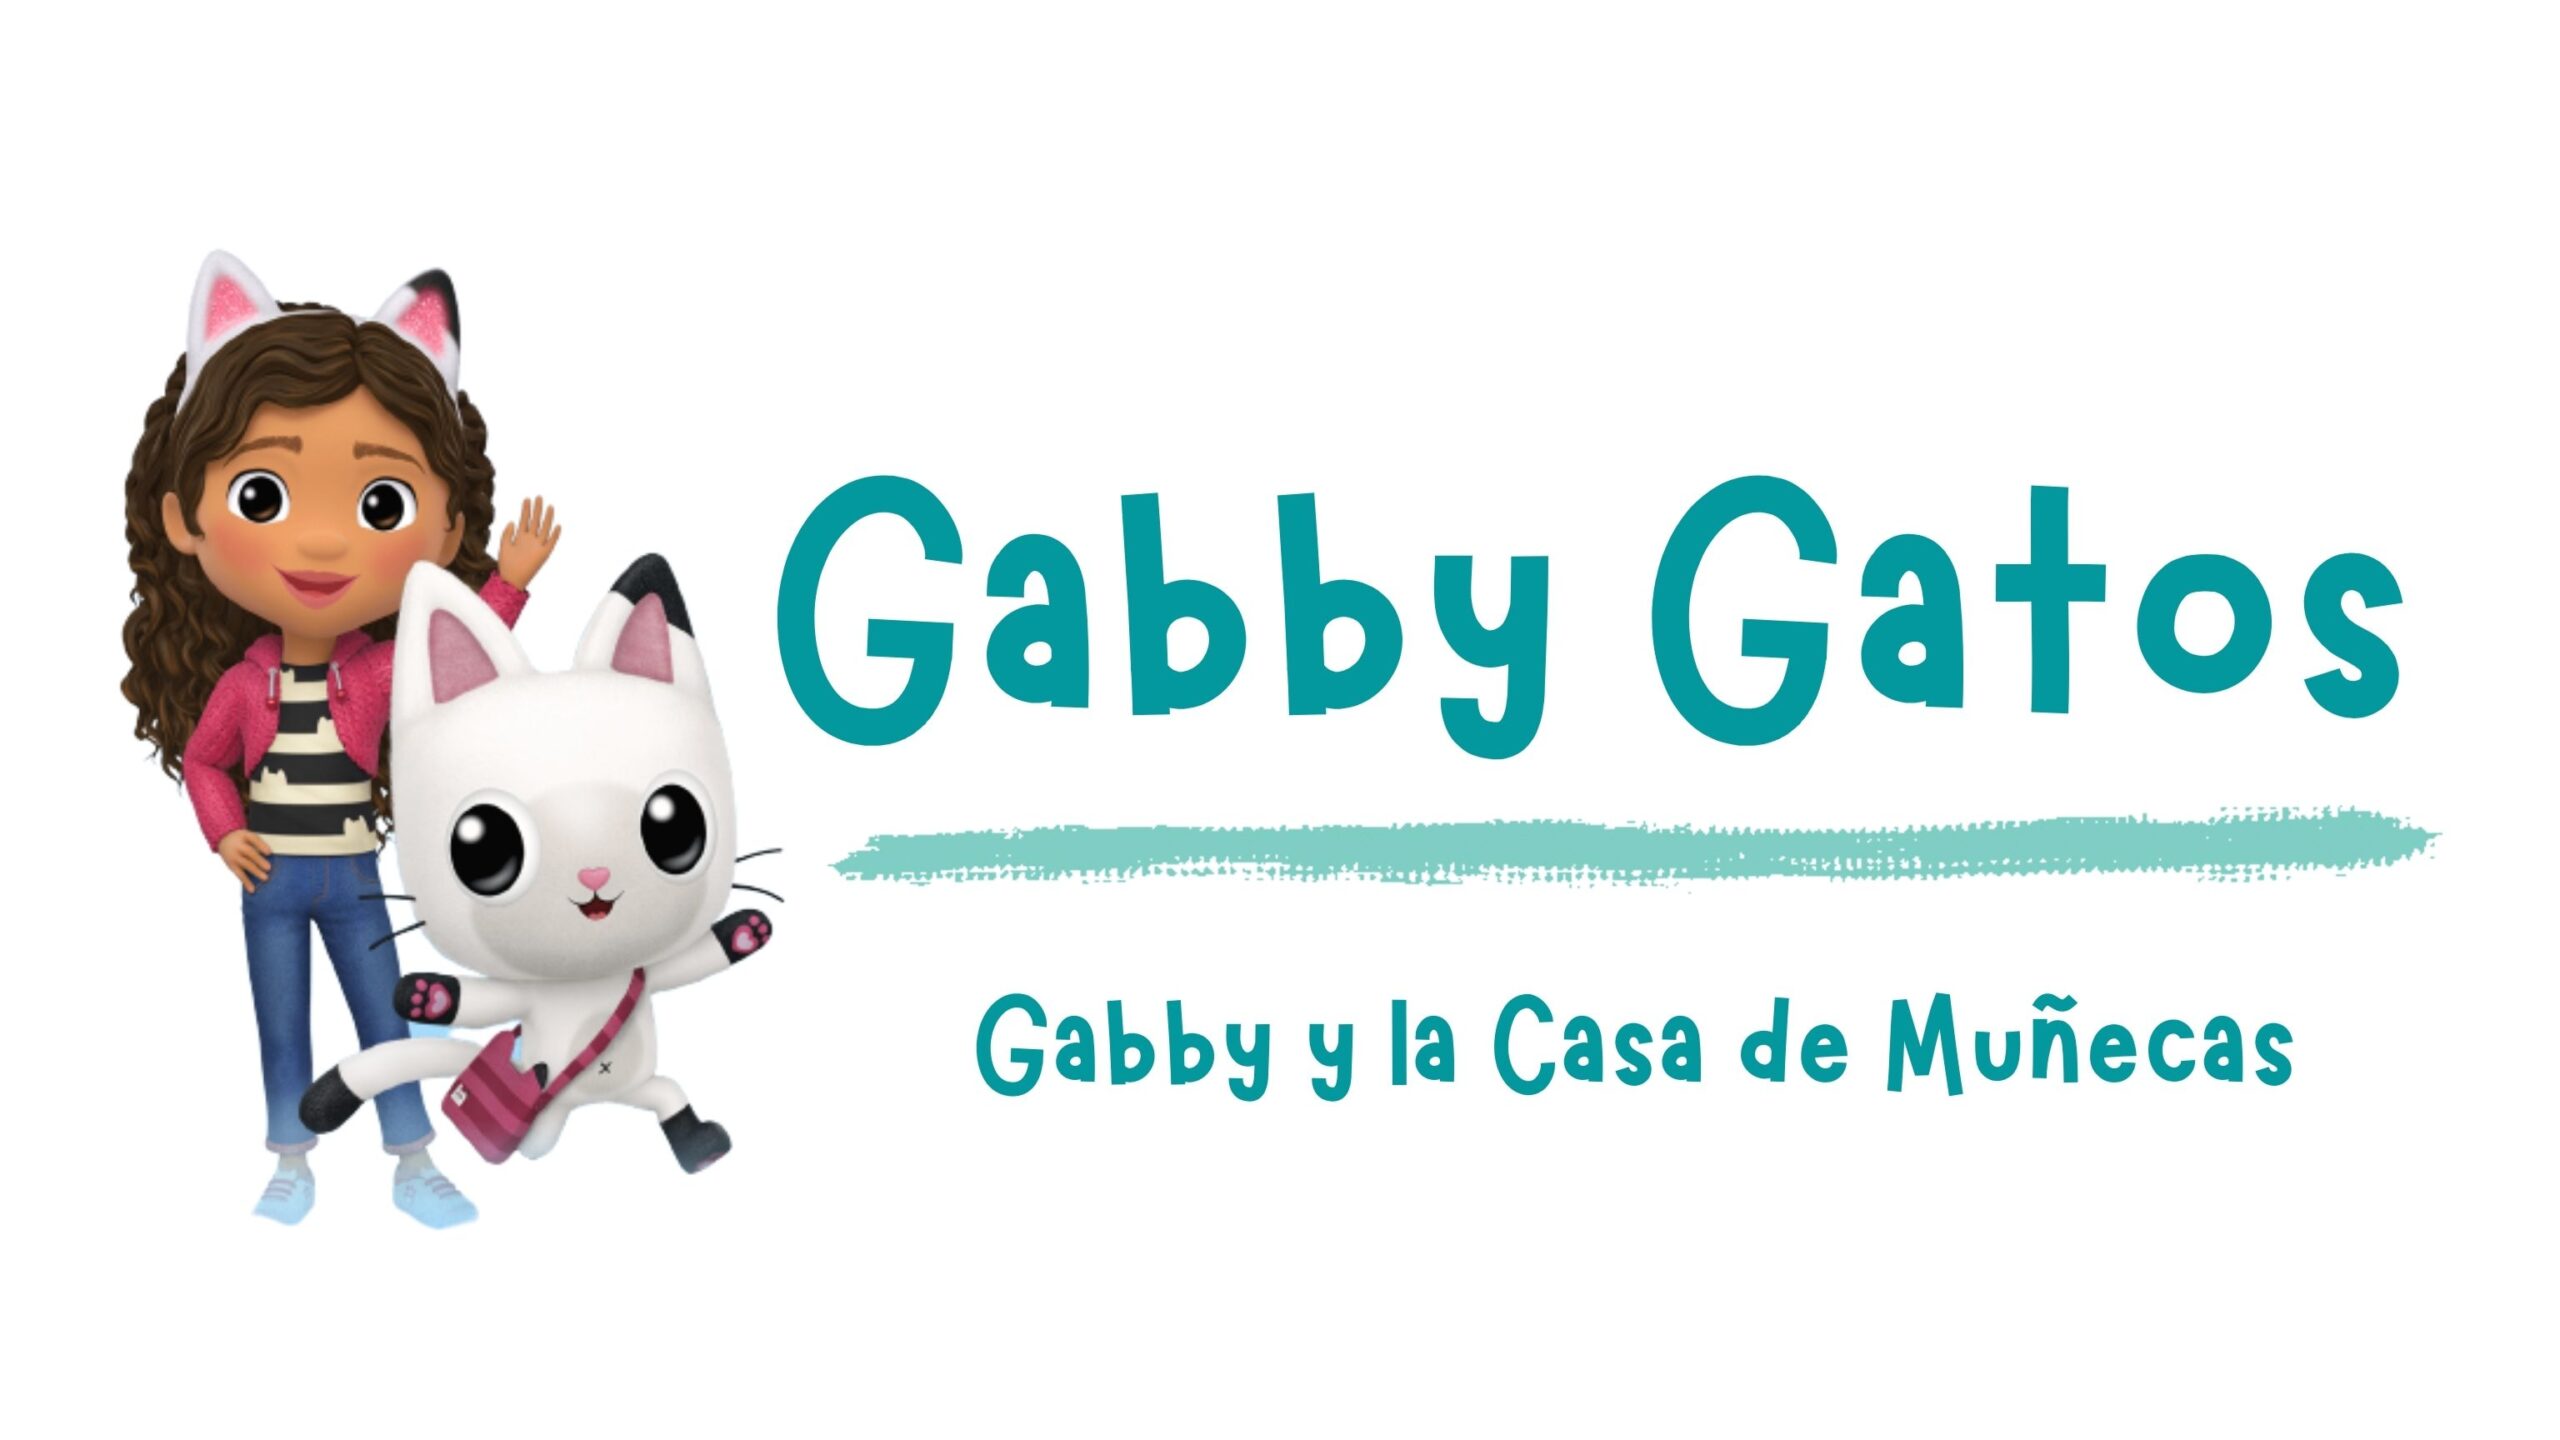 Personajes de La casa de Muñecas de Gabby - Gabby Gatos